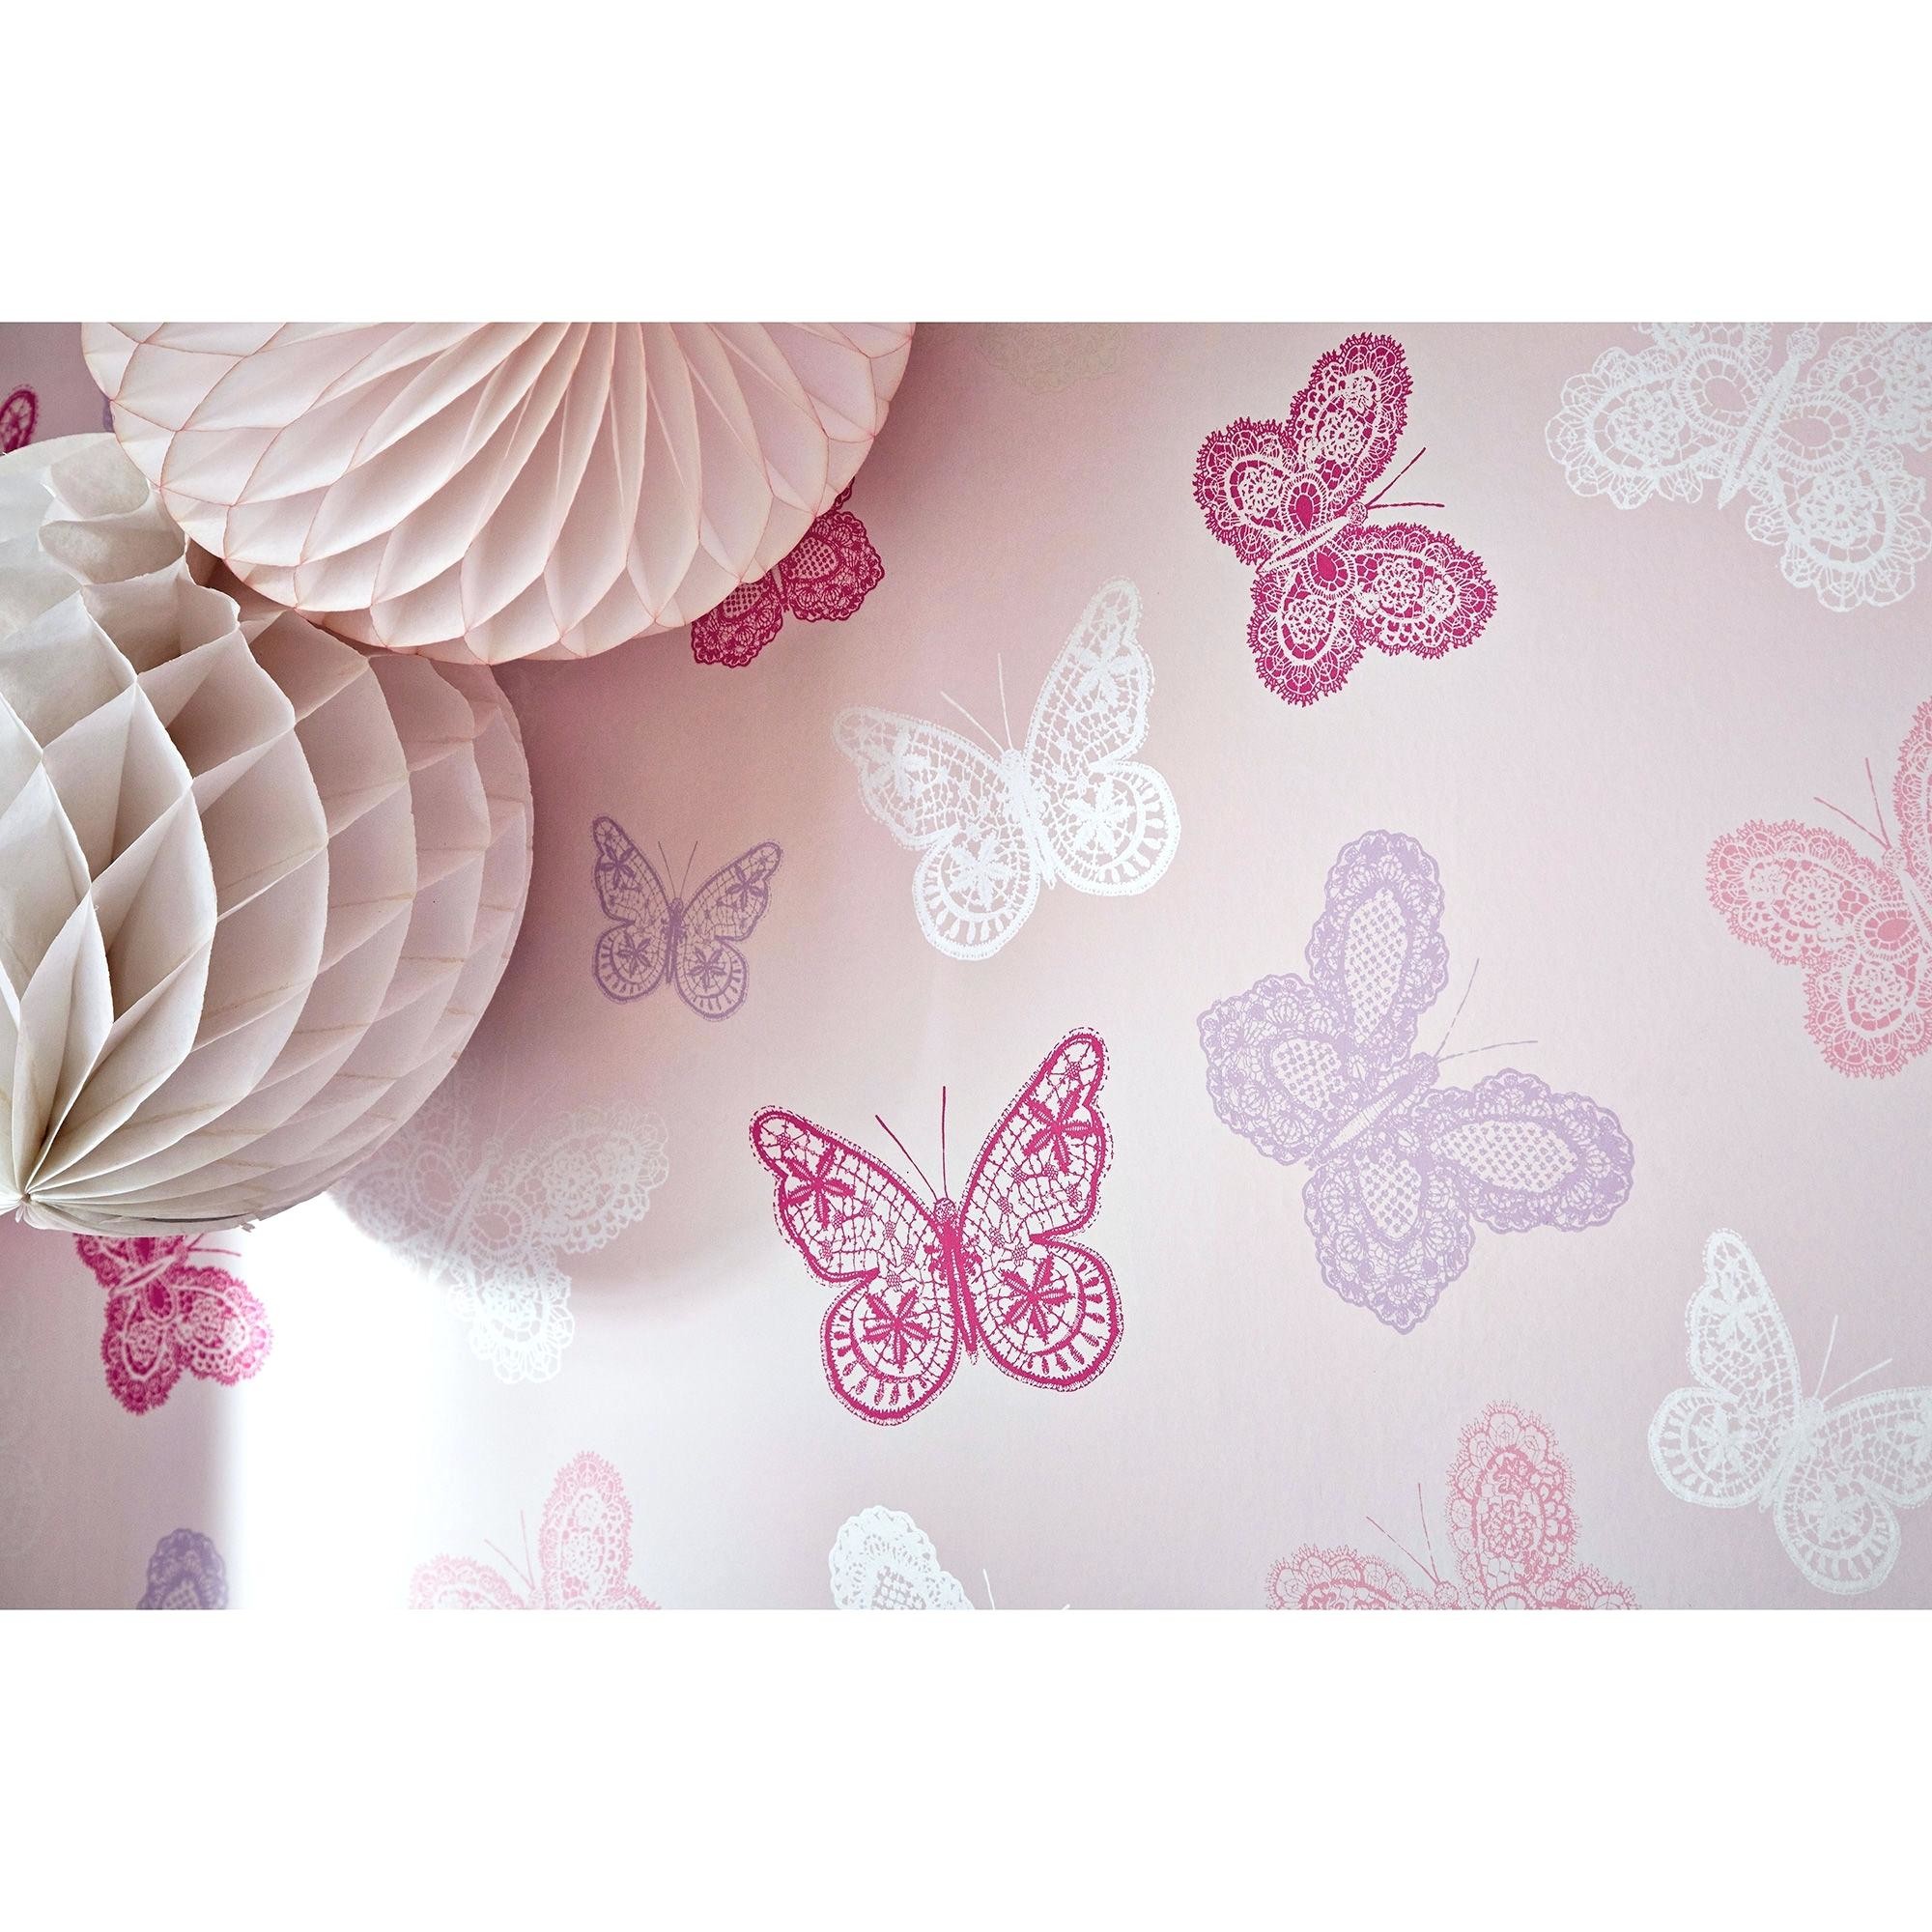 2000x2000 wallpaper with butterflies butterfly wallpaper large free desktop wallpaper  butterflies and flowers . wallpaper with butterflies ...